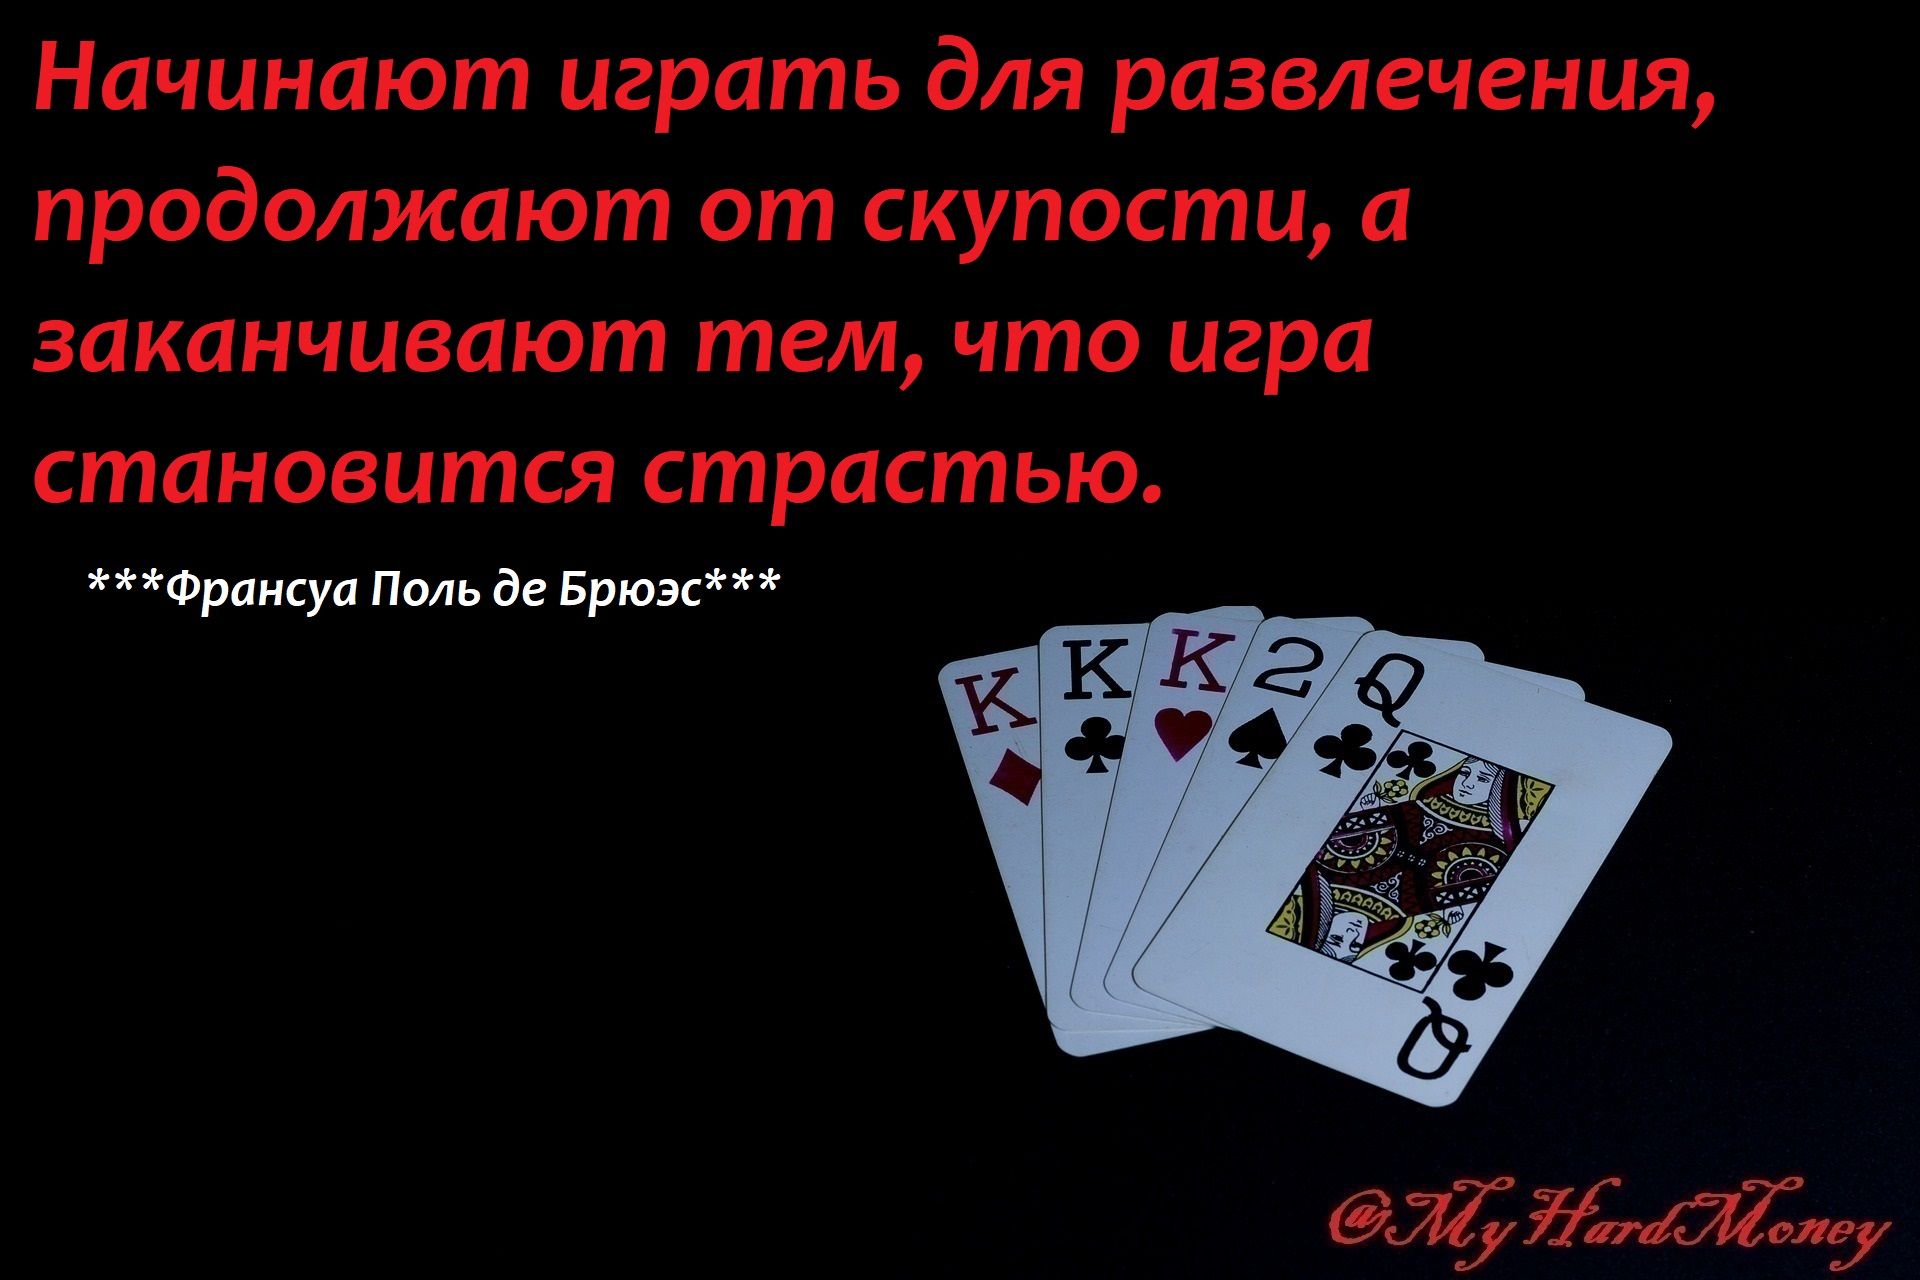 poker-2376676_1920.jpg